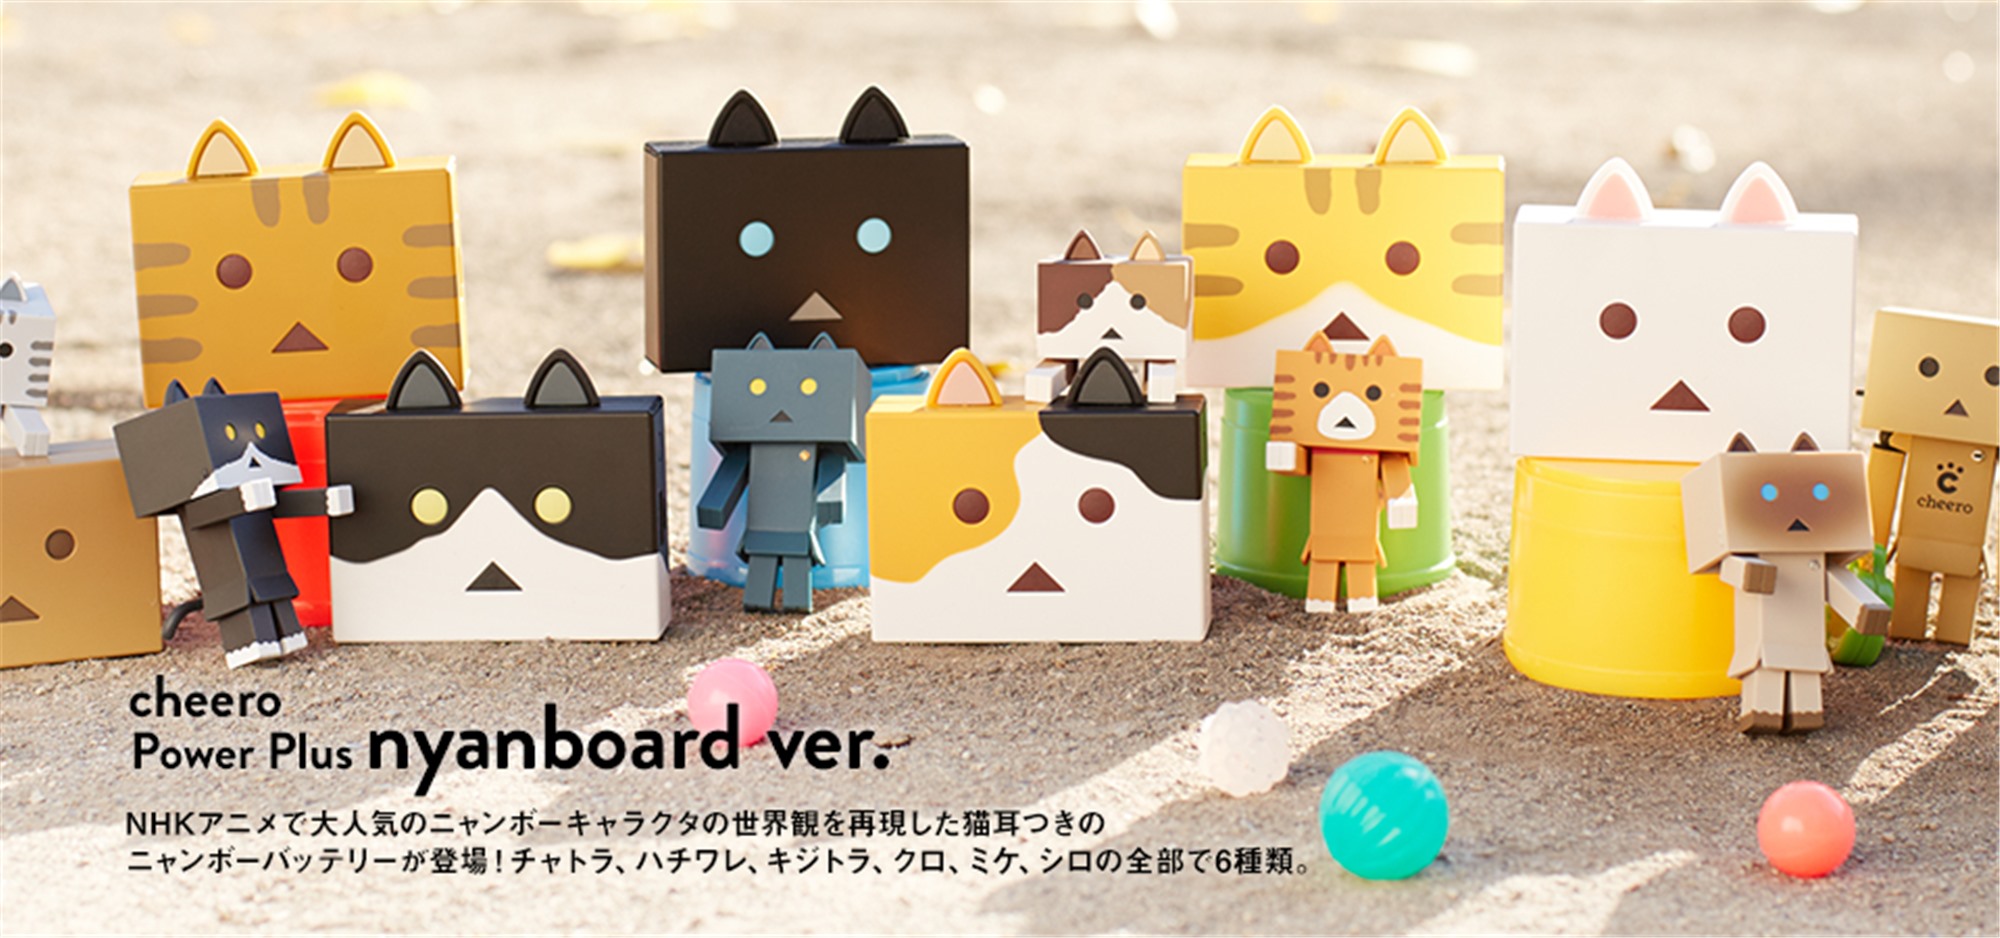 世界一かわいいネコ型モバイルバッテリー「cheero Power Plus nyanboard ver」が発売